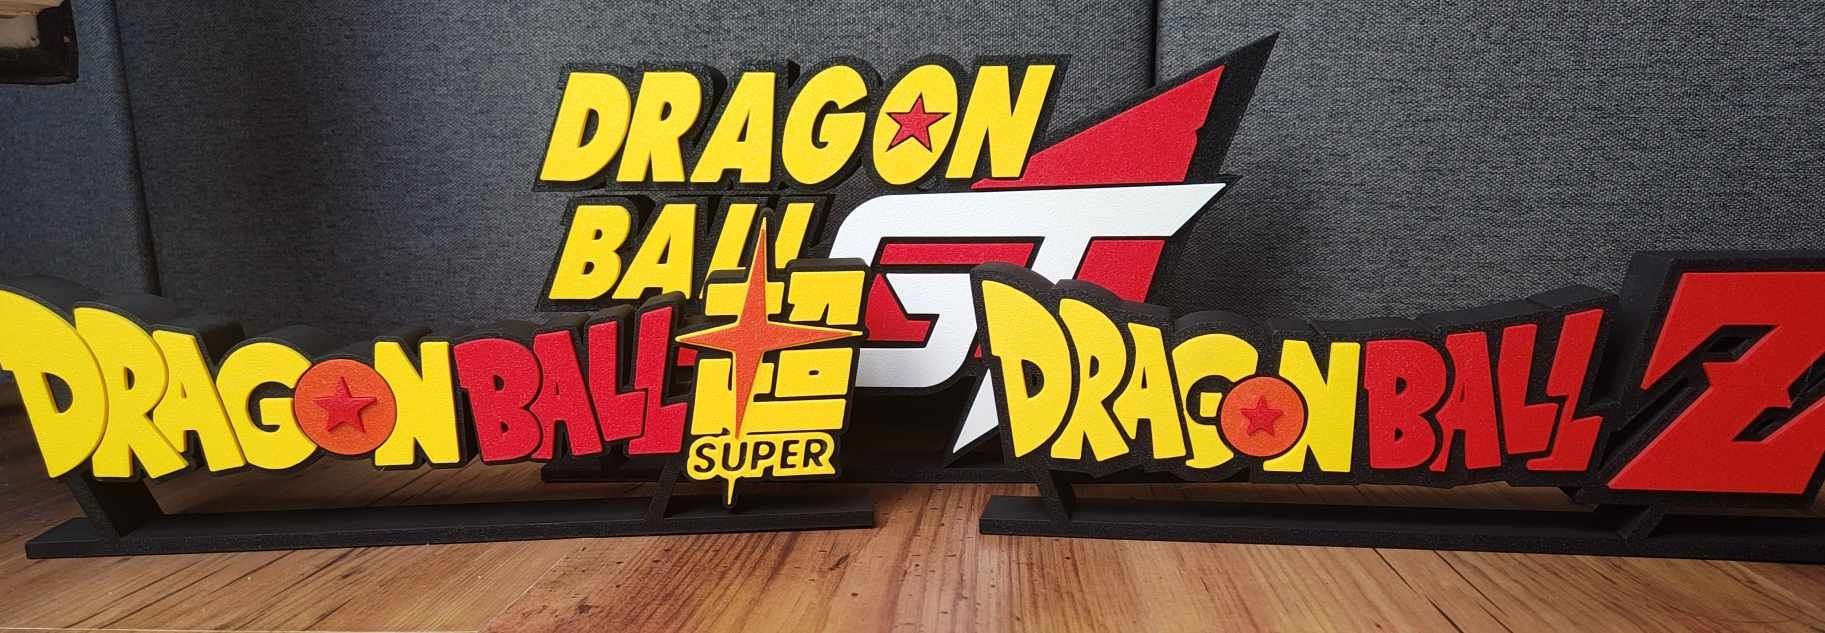 Logo Dragon Ball GT dla fana